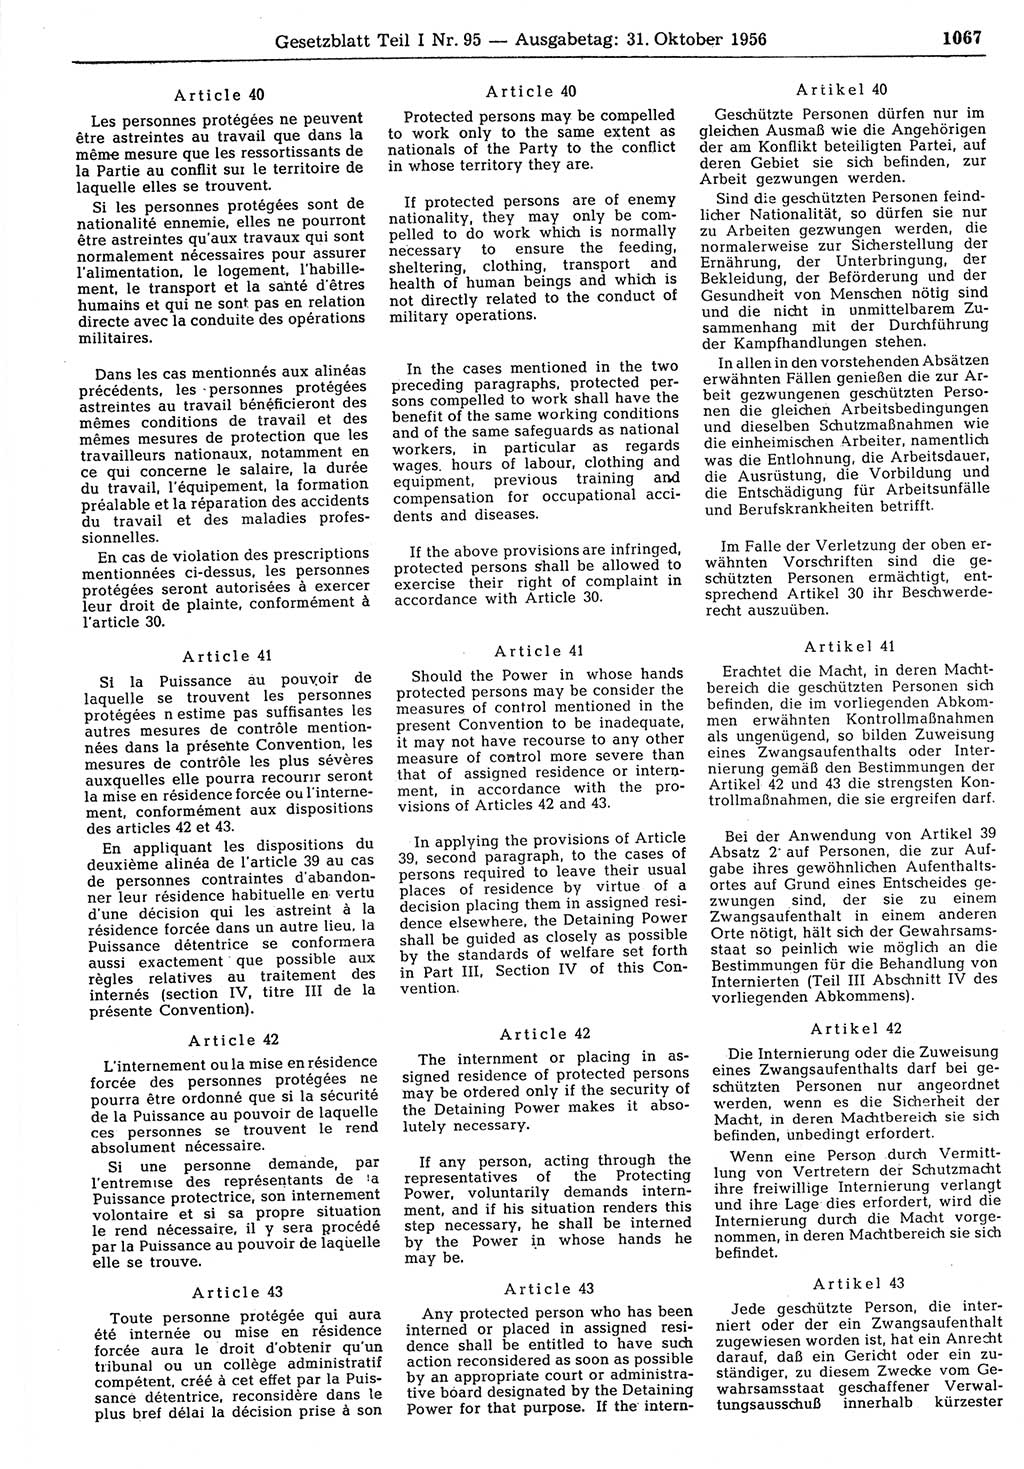 Gesetzblatt (GBl.) der Deutschen Demokratischen Republik (DDR) Teil Ⅰ 1956, Seite 1067 (GBl. DDR Ⅰ 1956, S. 1067)